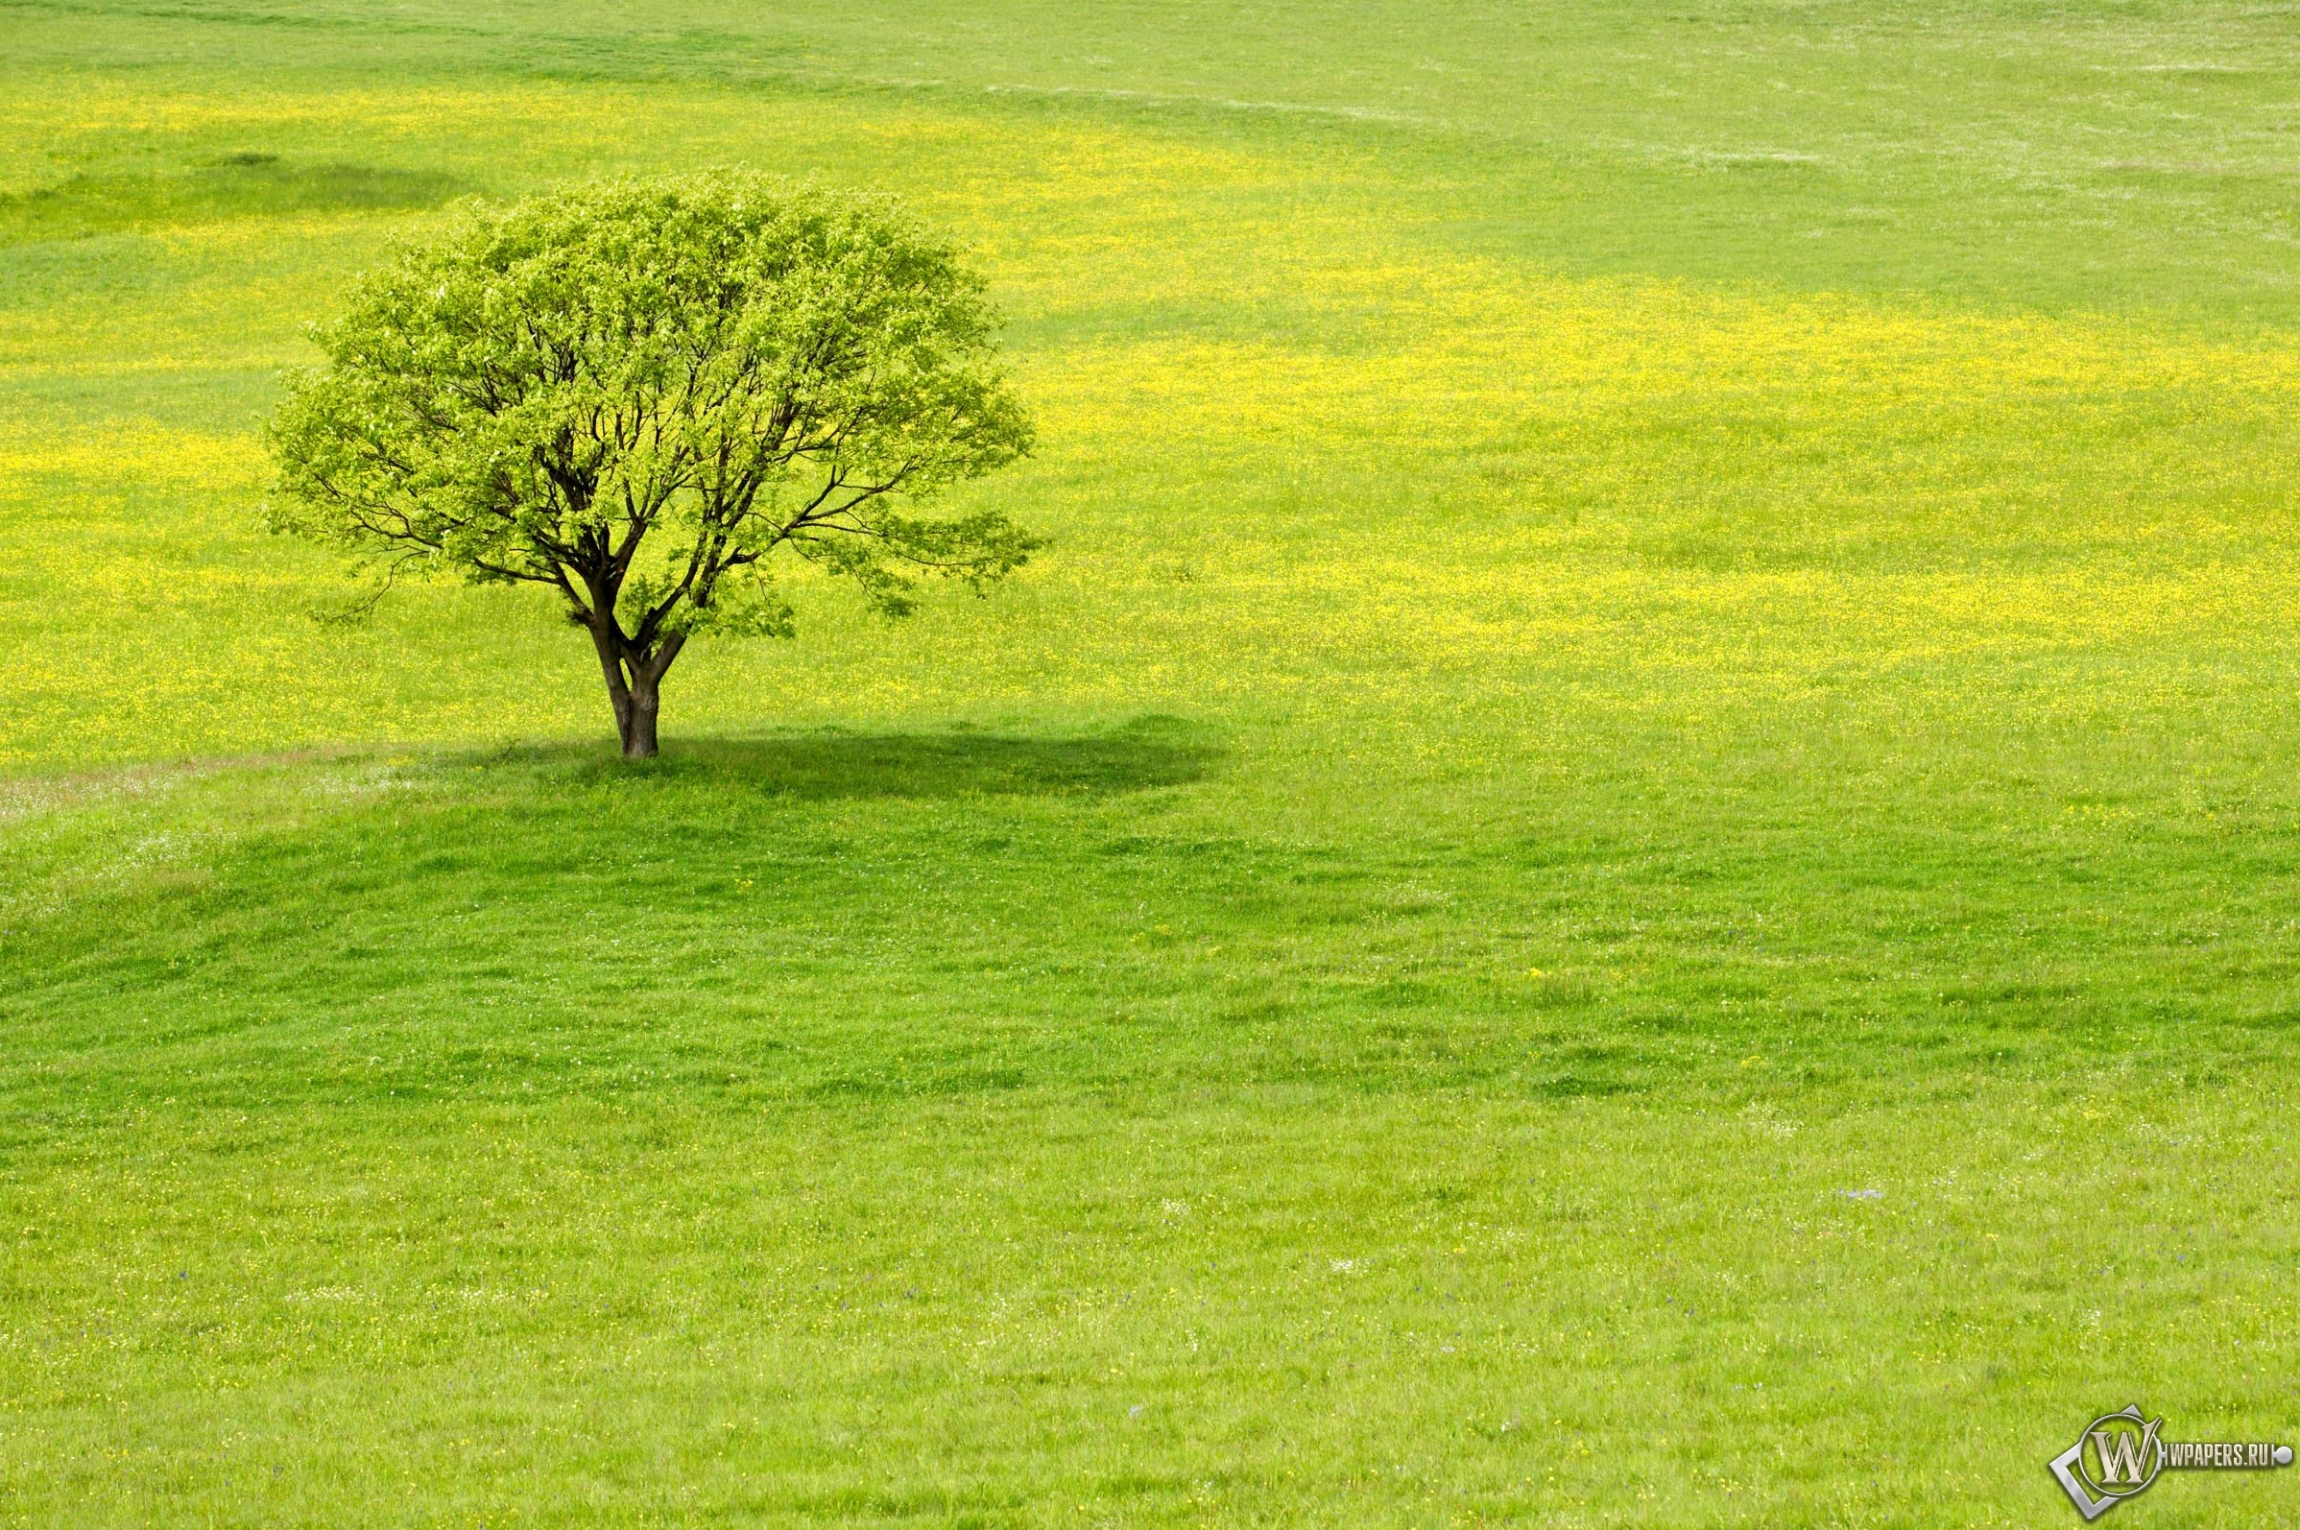 Скачать обои Meadow Tree Зелень Дерево Трава для рабочего стола